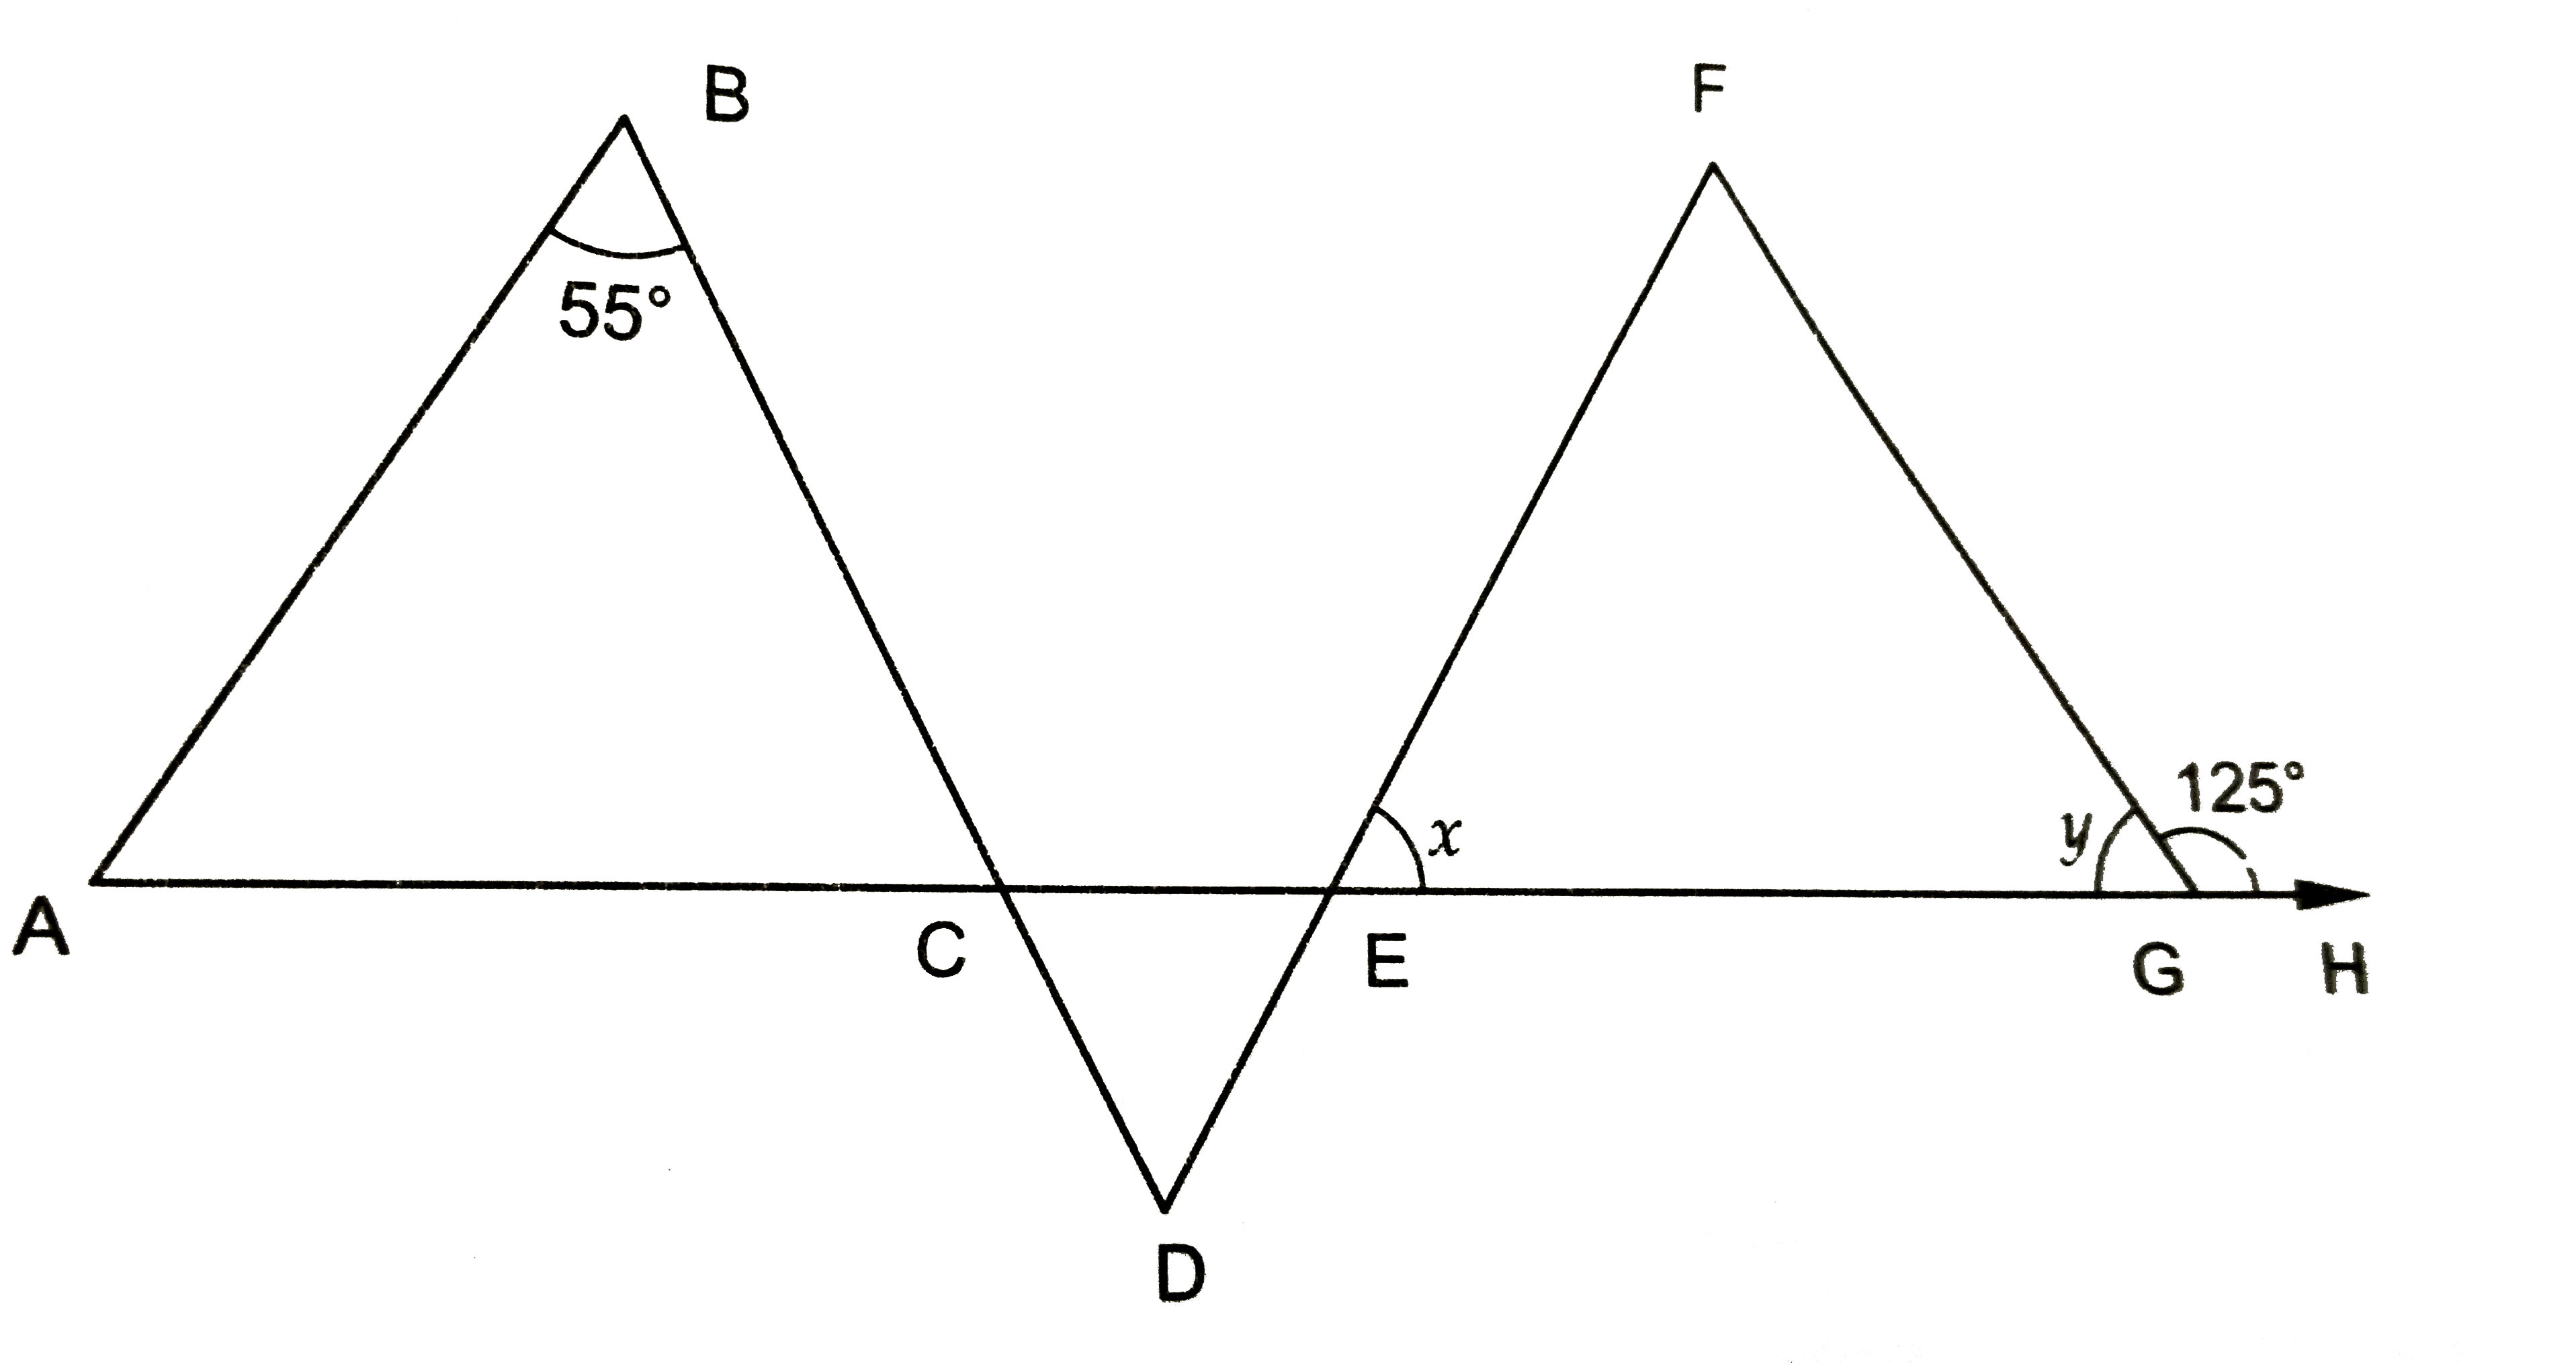 चित्र 9.41, में यदि AB || DE तथा BD || FG इस प्रकार है कि angleFGH = 125^(@) तथा angleB = 55^(@), तो x और y का मान ज्ञात करो।